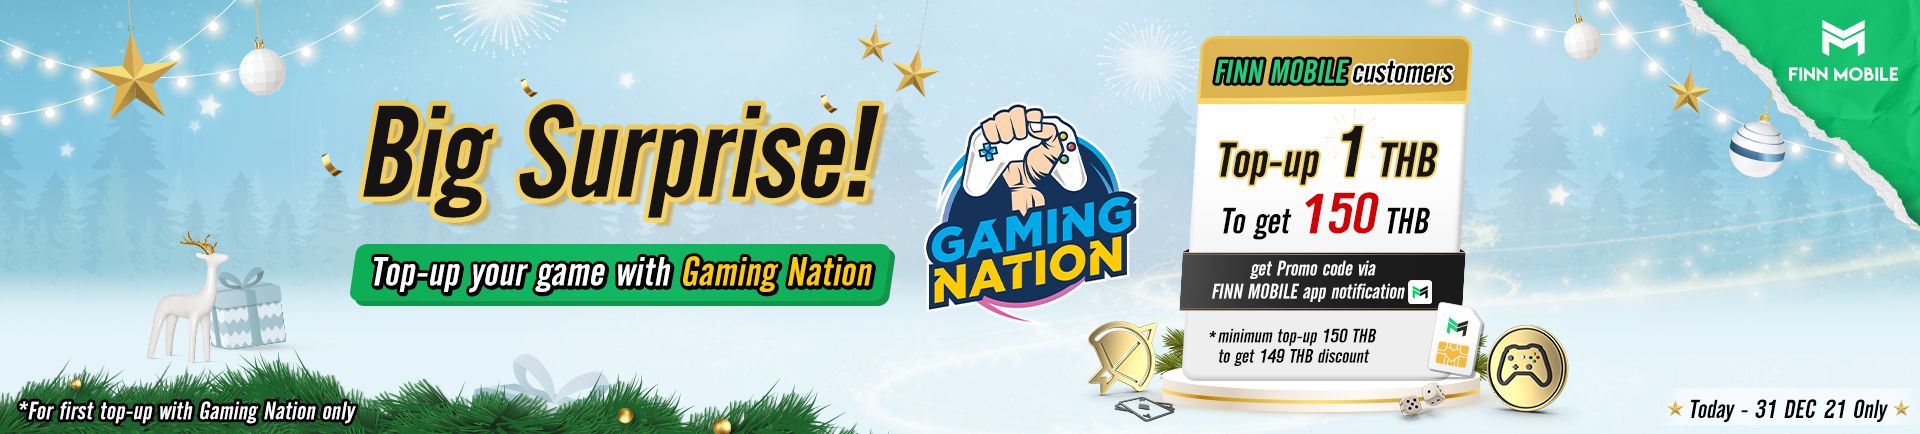 FINN MOBILE x Gaming Nation